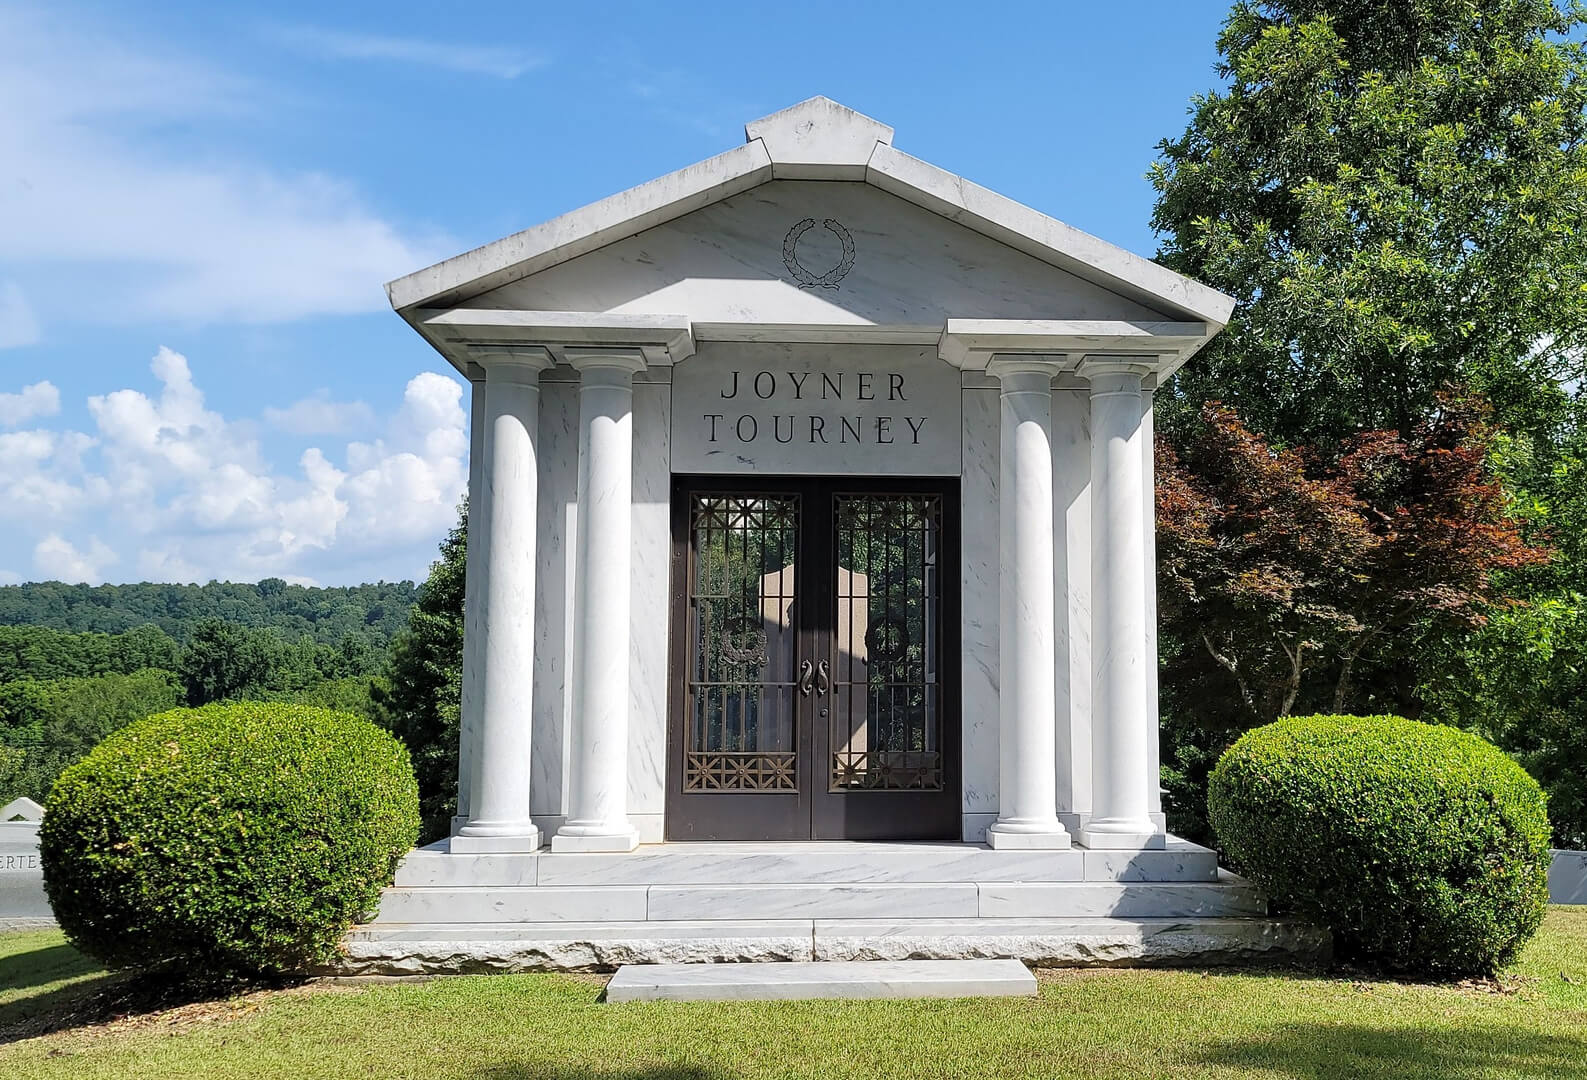 A memorial room at the graveyard named after Joyner Tourney